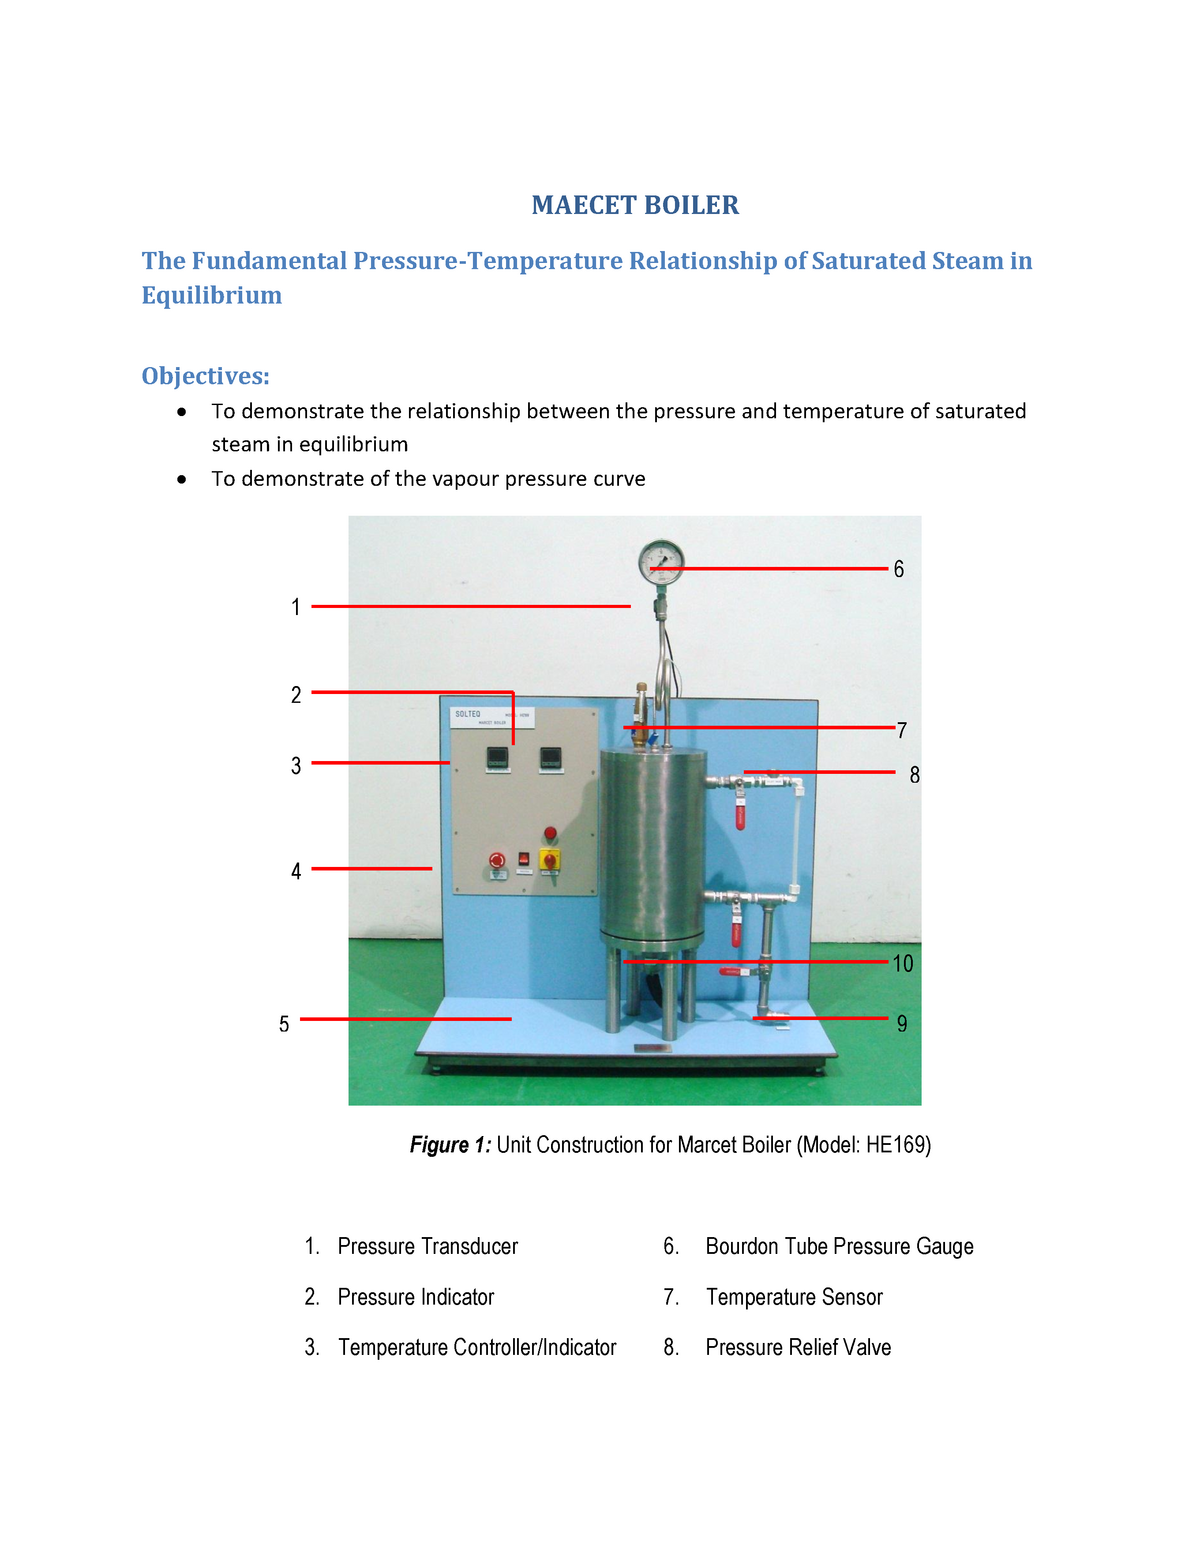 04 Marcet Boiler - MAECET BOILER The Fundamental Pressure-Temperature